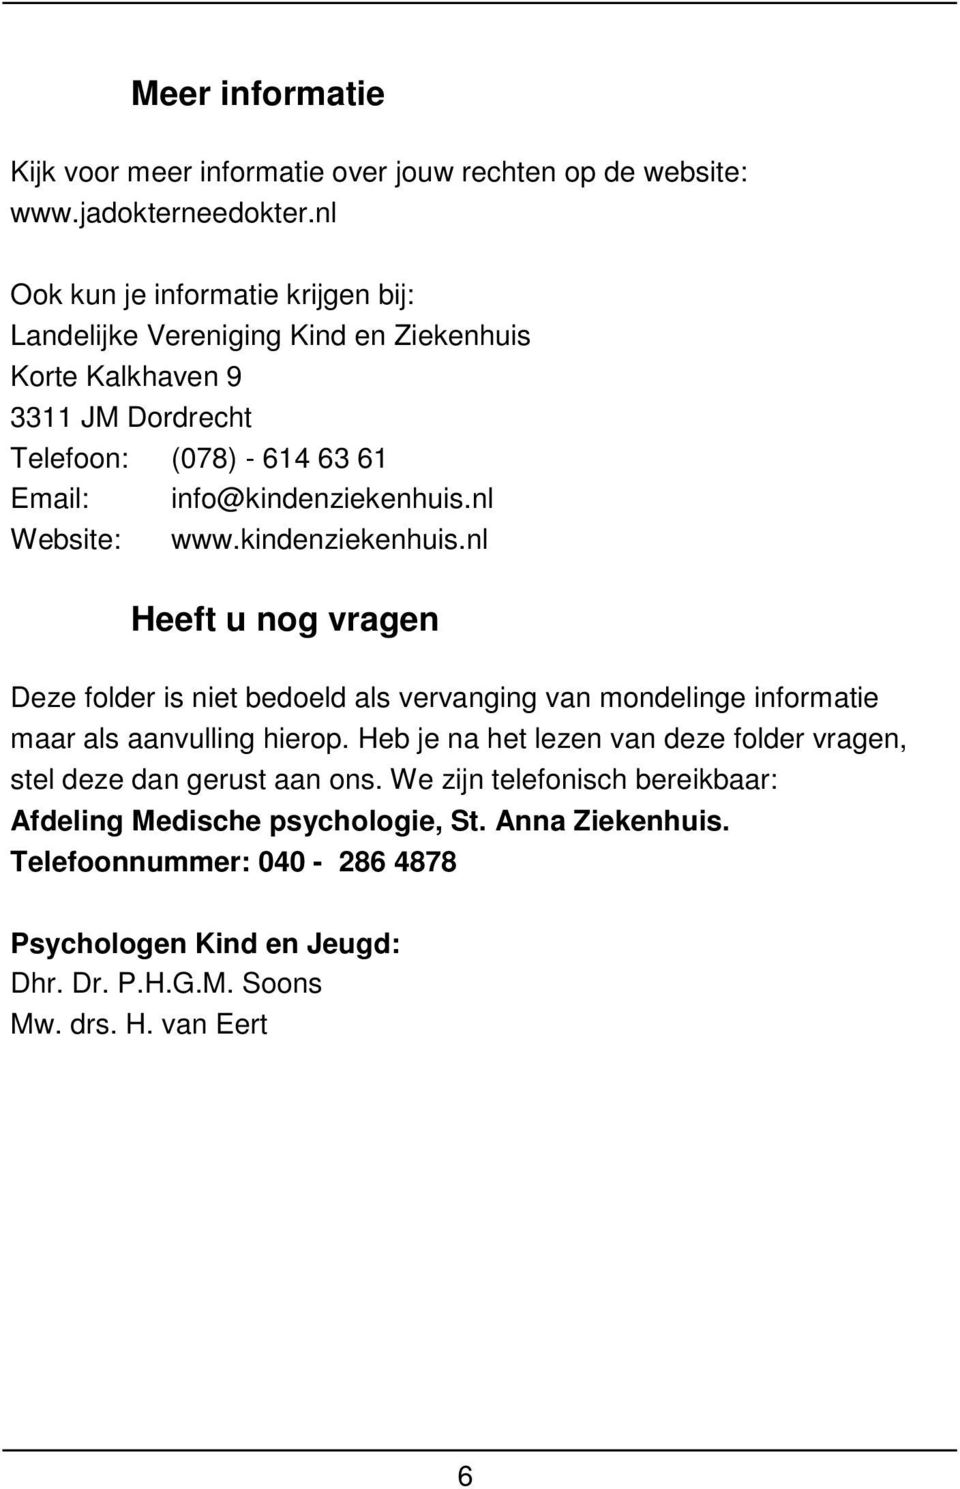 info@kindenziekenhuis.nl Website: www.kindenziekenhuis.nl Heeft u nog vragen Deze folder is niet bedoeld als vervanging van mondelinge informatie maar als aanvulling hierop.